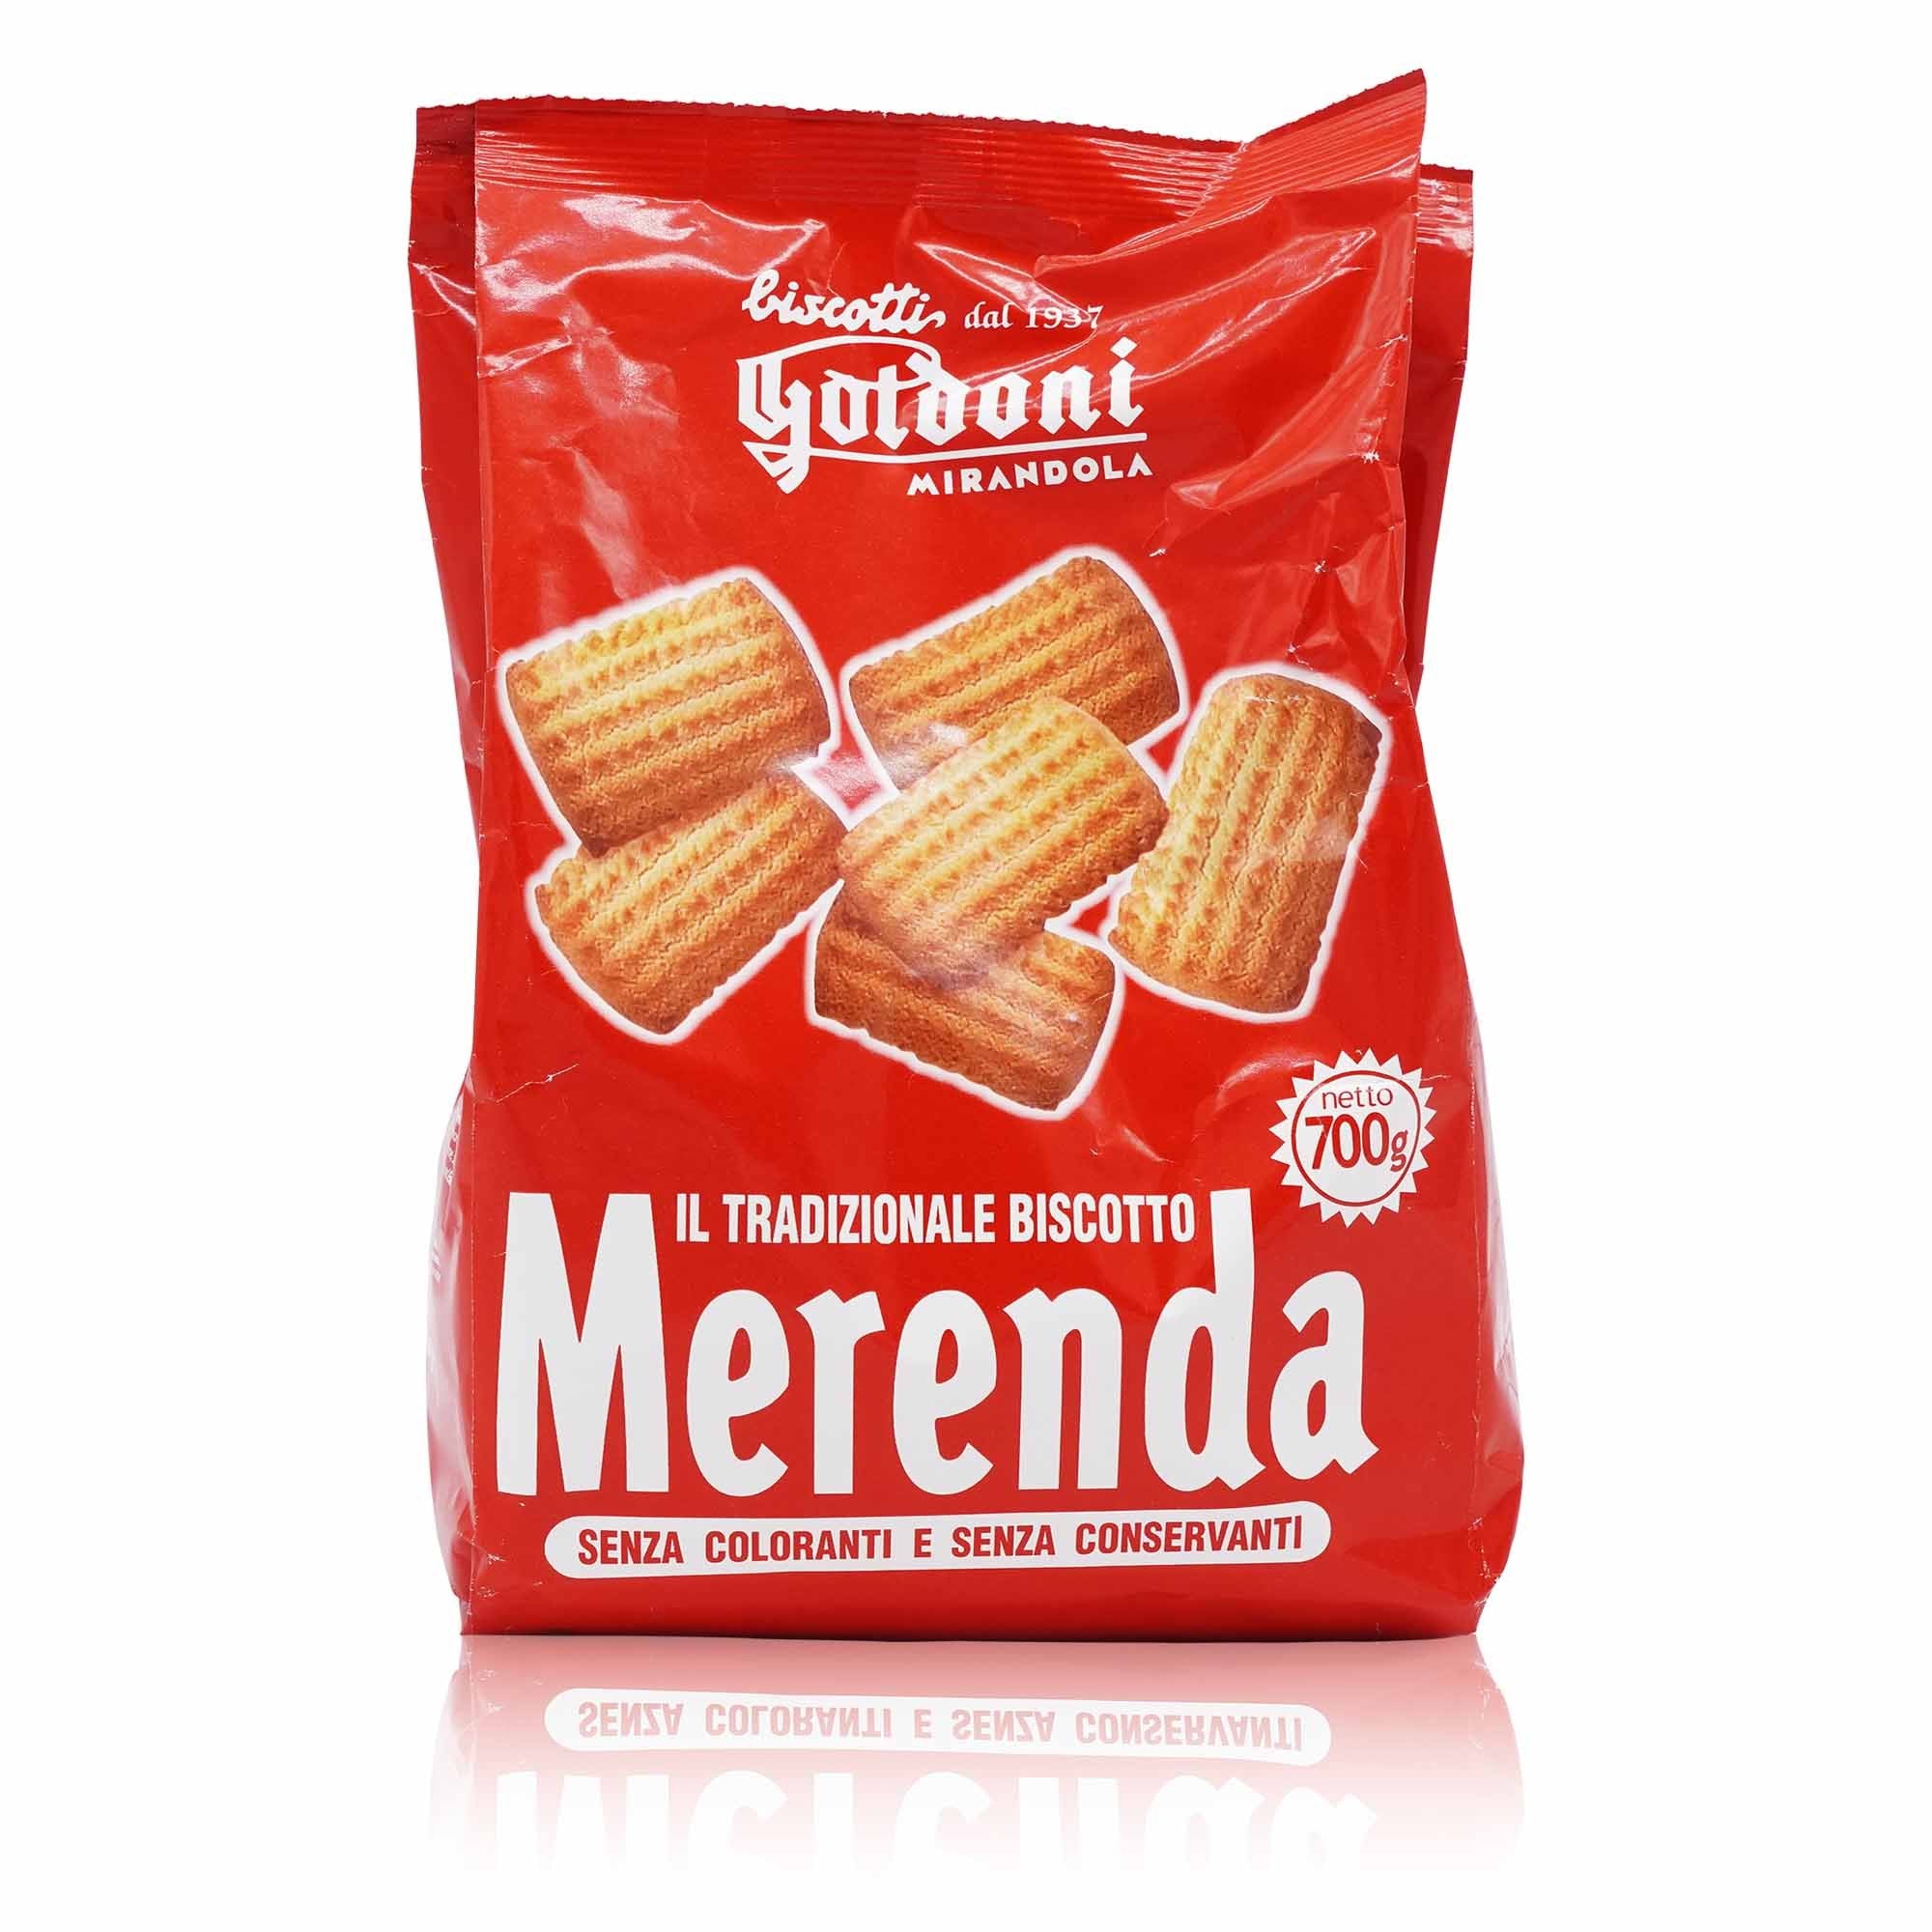 GOLDONI Biscotti Merenda – Kekse Merenda - 0,7kg - italienisch-einkaufen.de